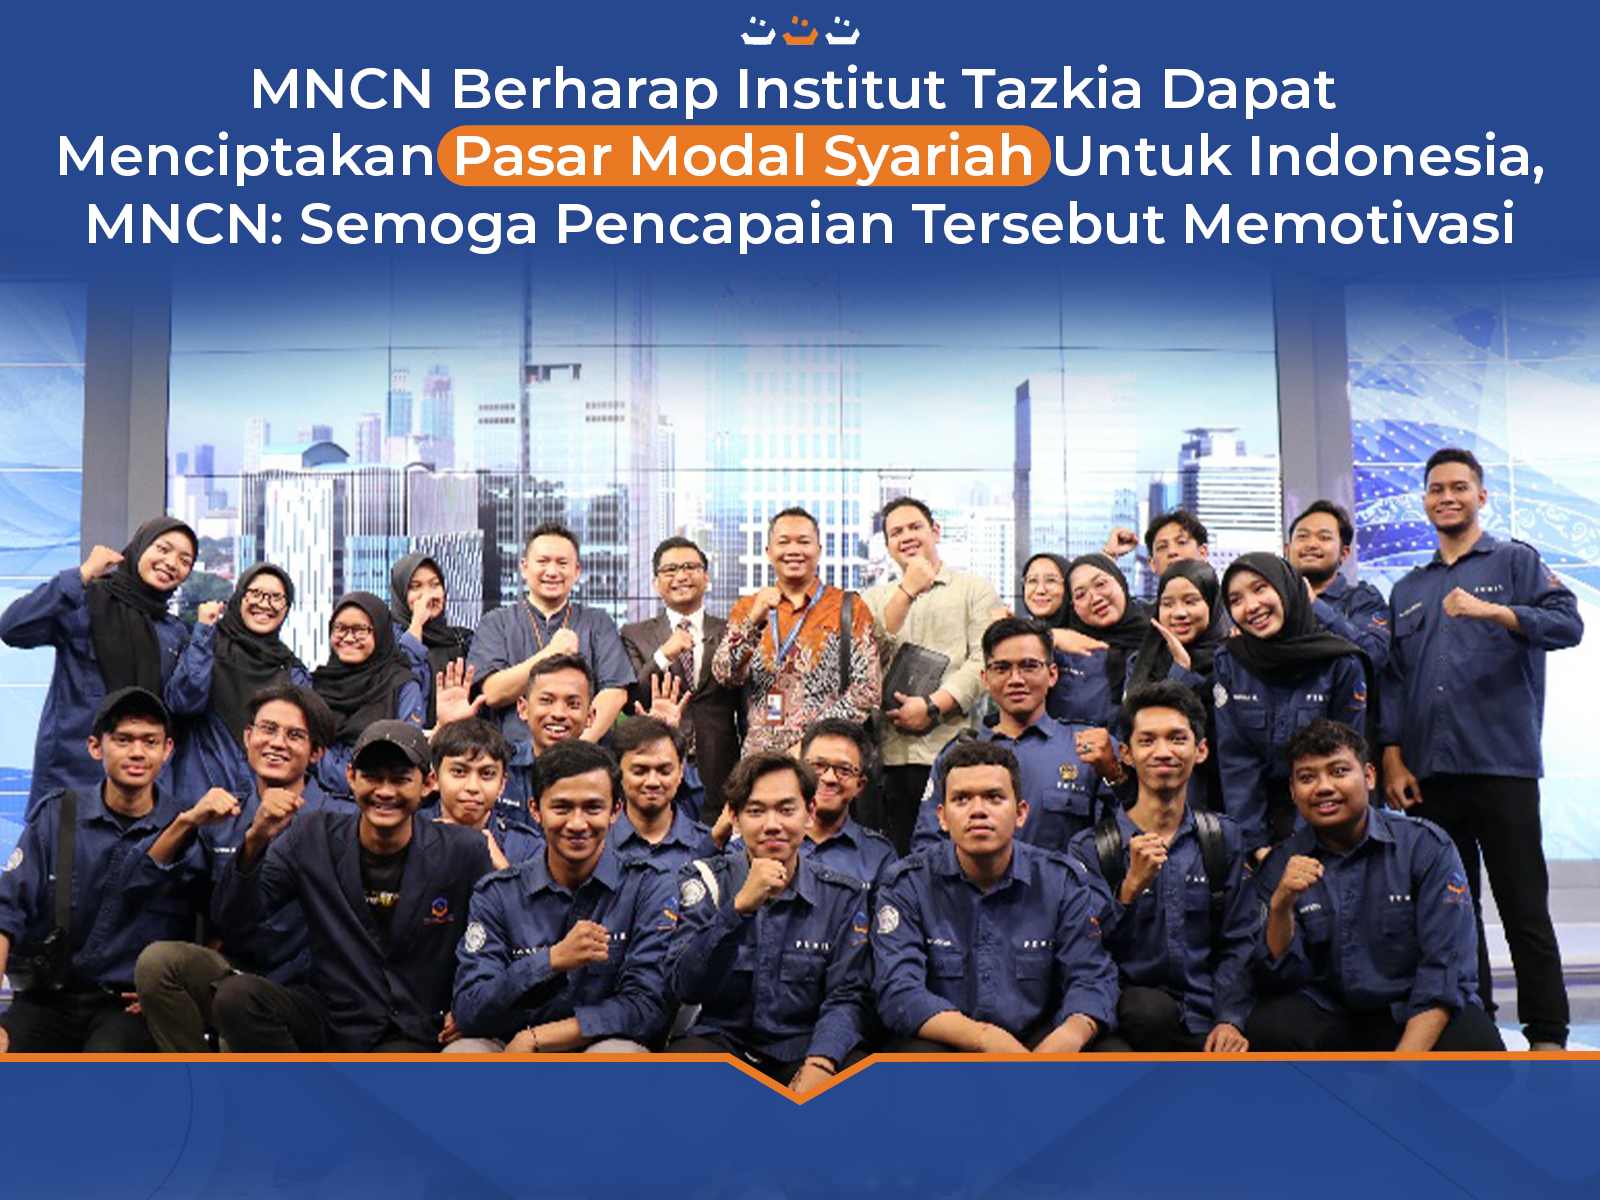 MNCN berharap Institut Tazkia dapat menciptakan pasar modal syariah untuk Indonesia, MNCN: Semoga pencapaian tersebut memotivasi 